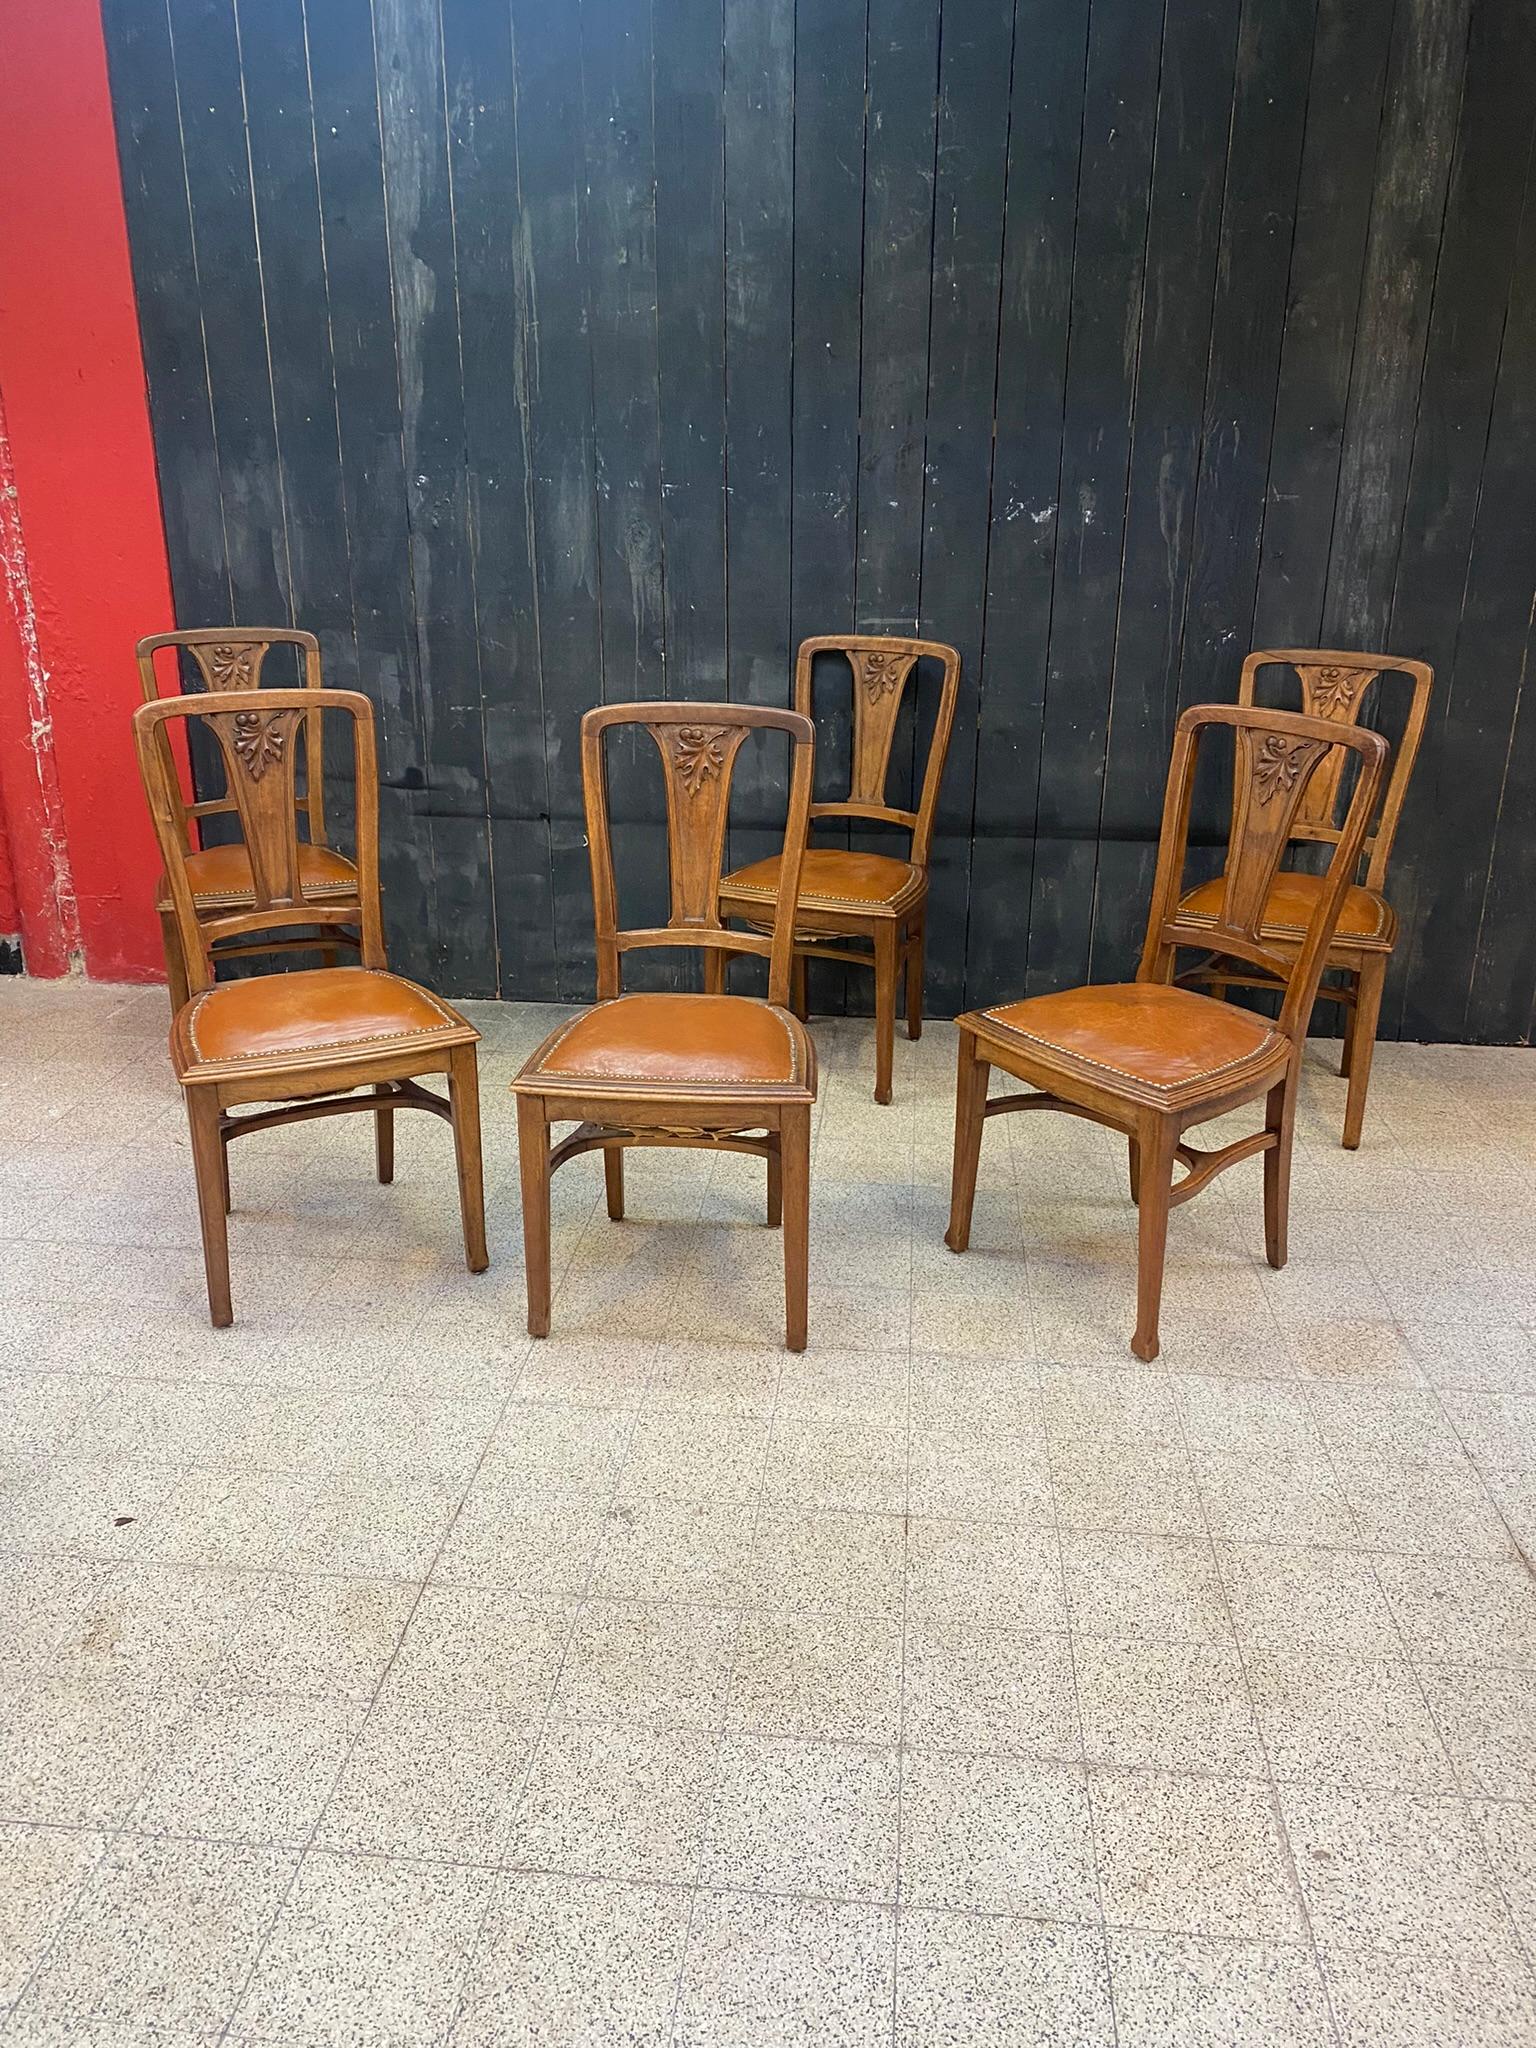 Gauthier-Poinsignon & Cie, 6 Jugendstilstühle aus Nussbaum mit Kamelledersitzen.
(Flecken auf einigen Stühlen, Restaurierung und Schrauben auf 2 Stühlen).
Ein Tisch und 2 Büfetts auf dem Modell vorhanden.